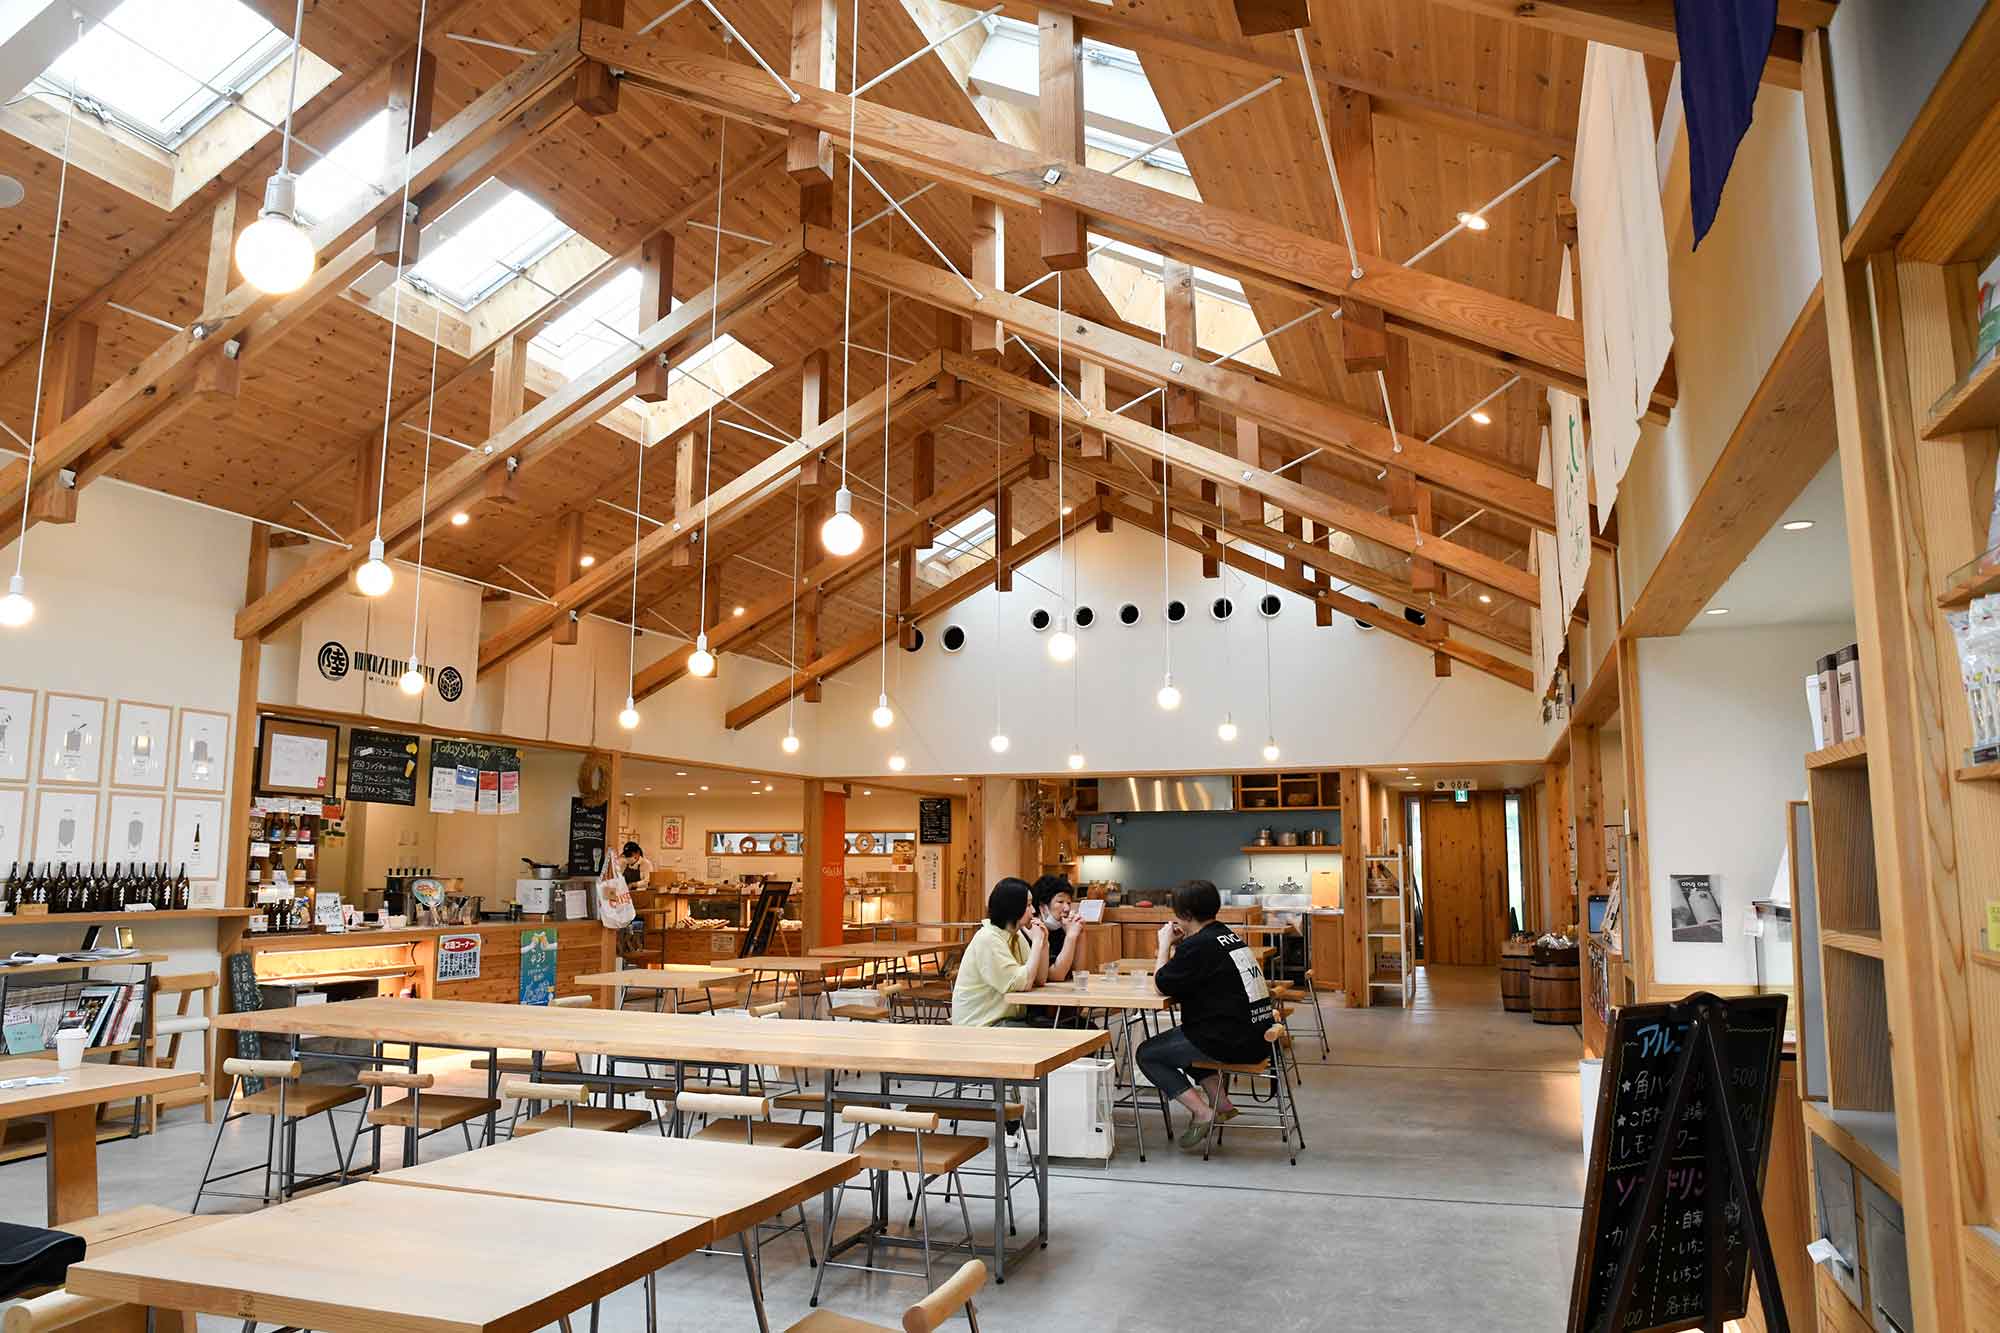 株式会社醸［岩手県陸前高田市］ 発酵食の集積拠点として、2020年12月に8店舗が入居する商業施設「CAMOCY」をオープン。